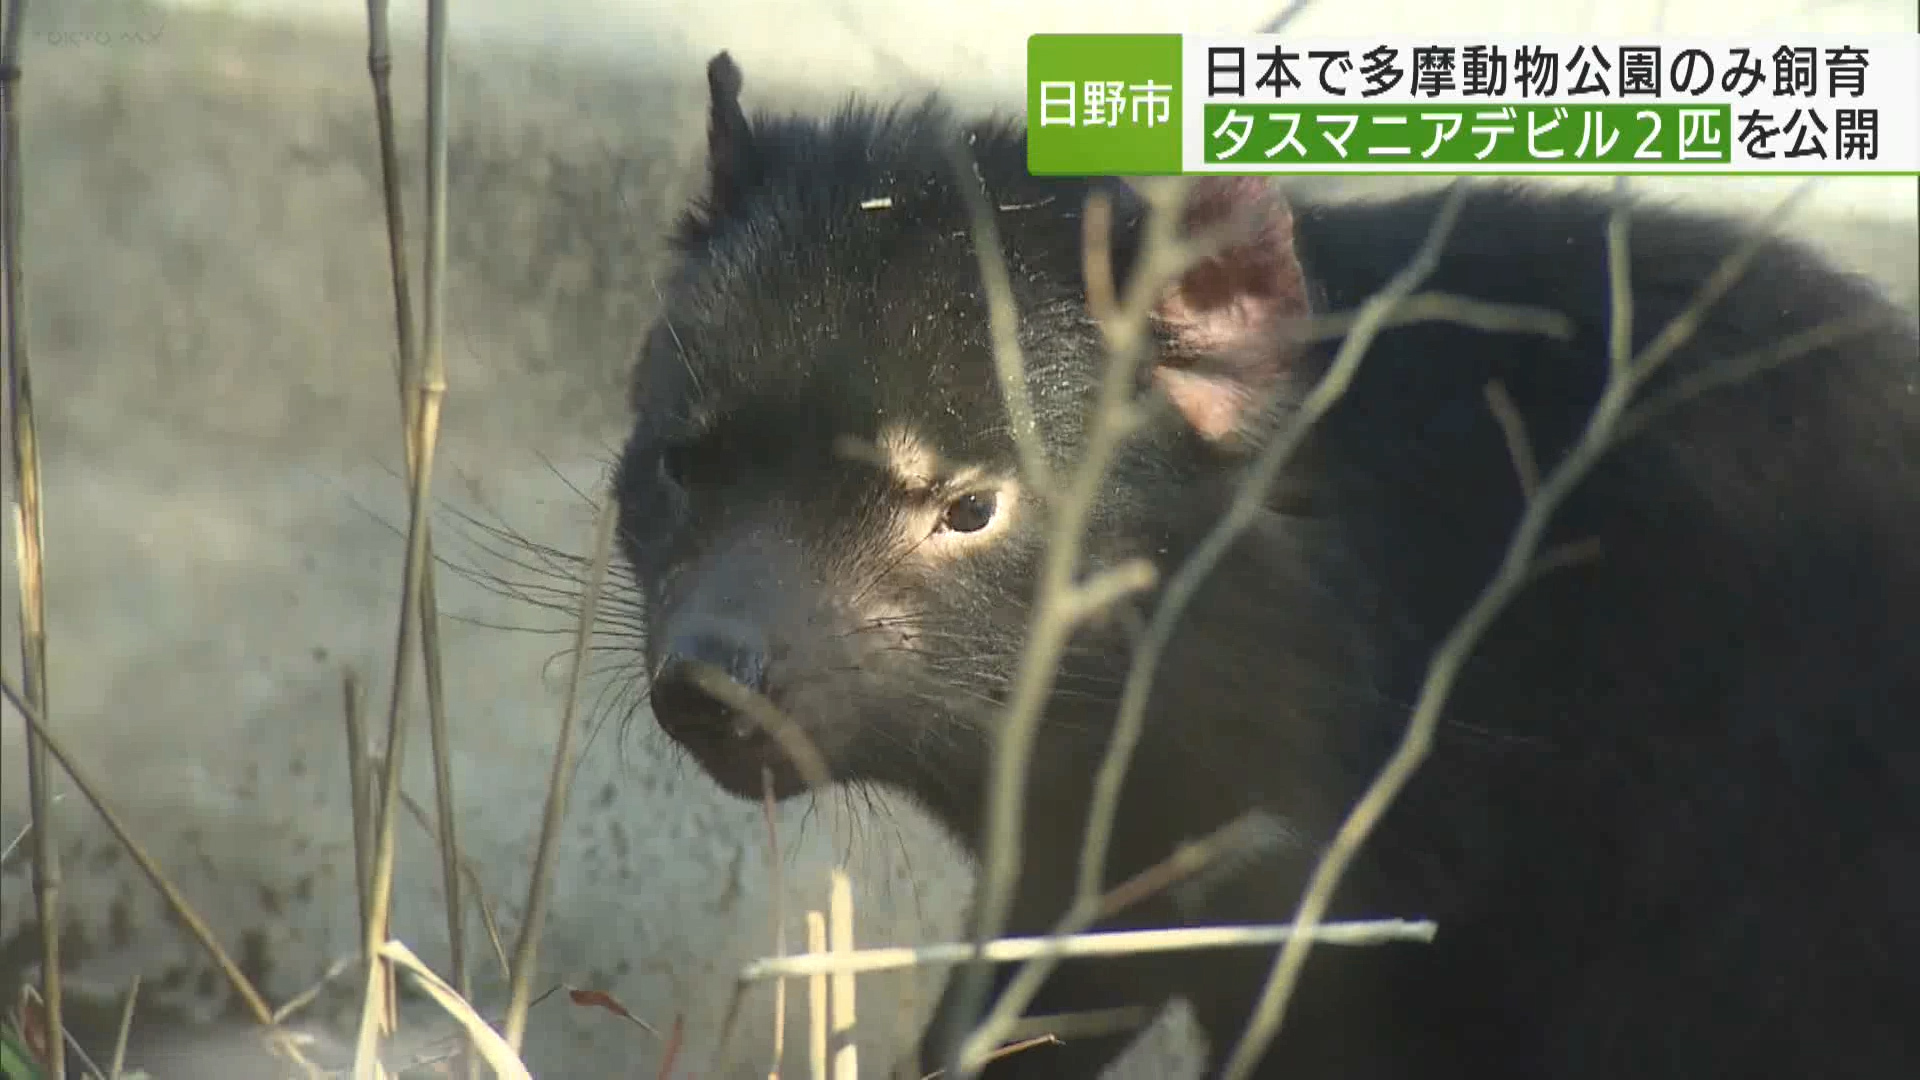 日野市にある多摩動物公園で、絶滅危惧種に指定されているタスマニアデビルの公開が始まりました。